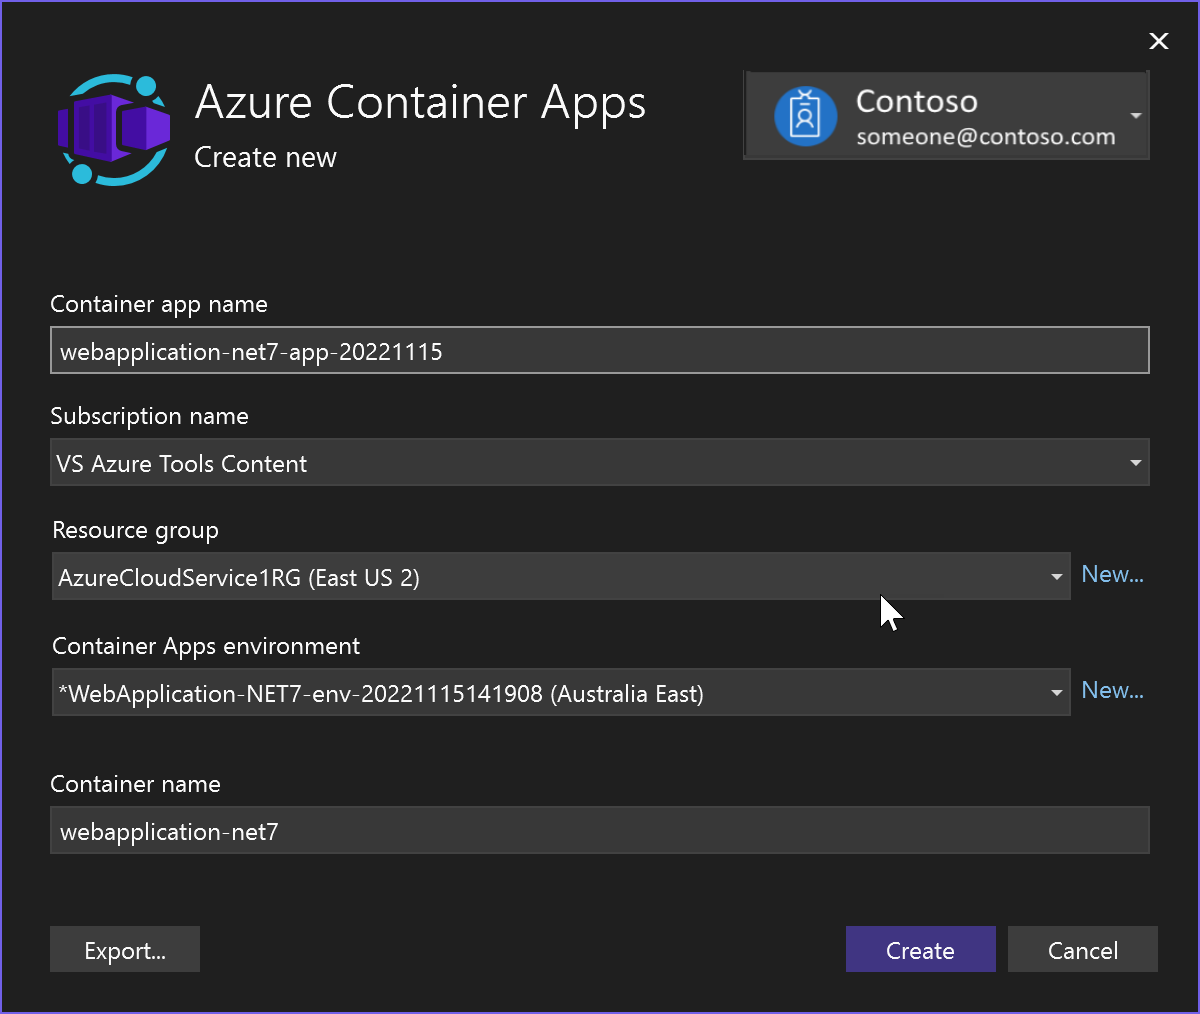 Captura de pantalla que muestra la creación de una nueva aplicación de contenedor de Azure.